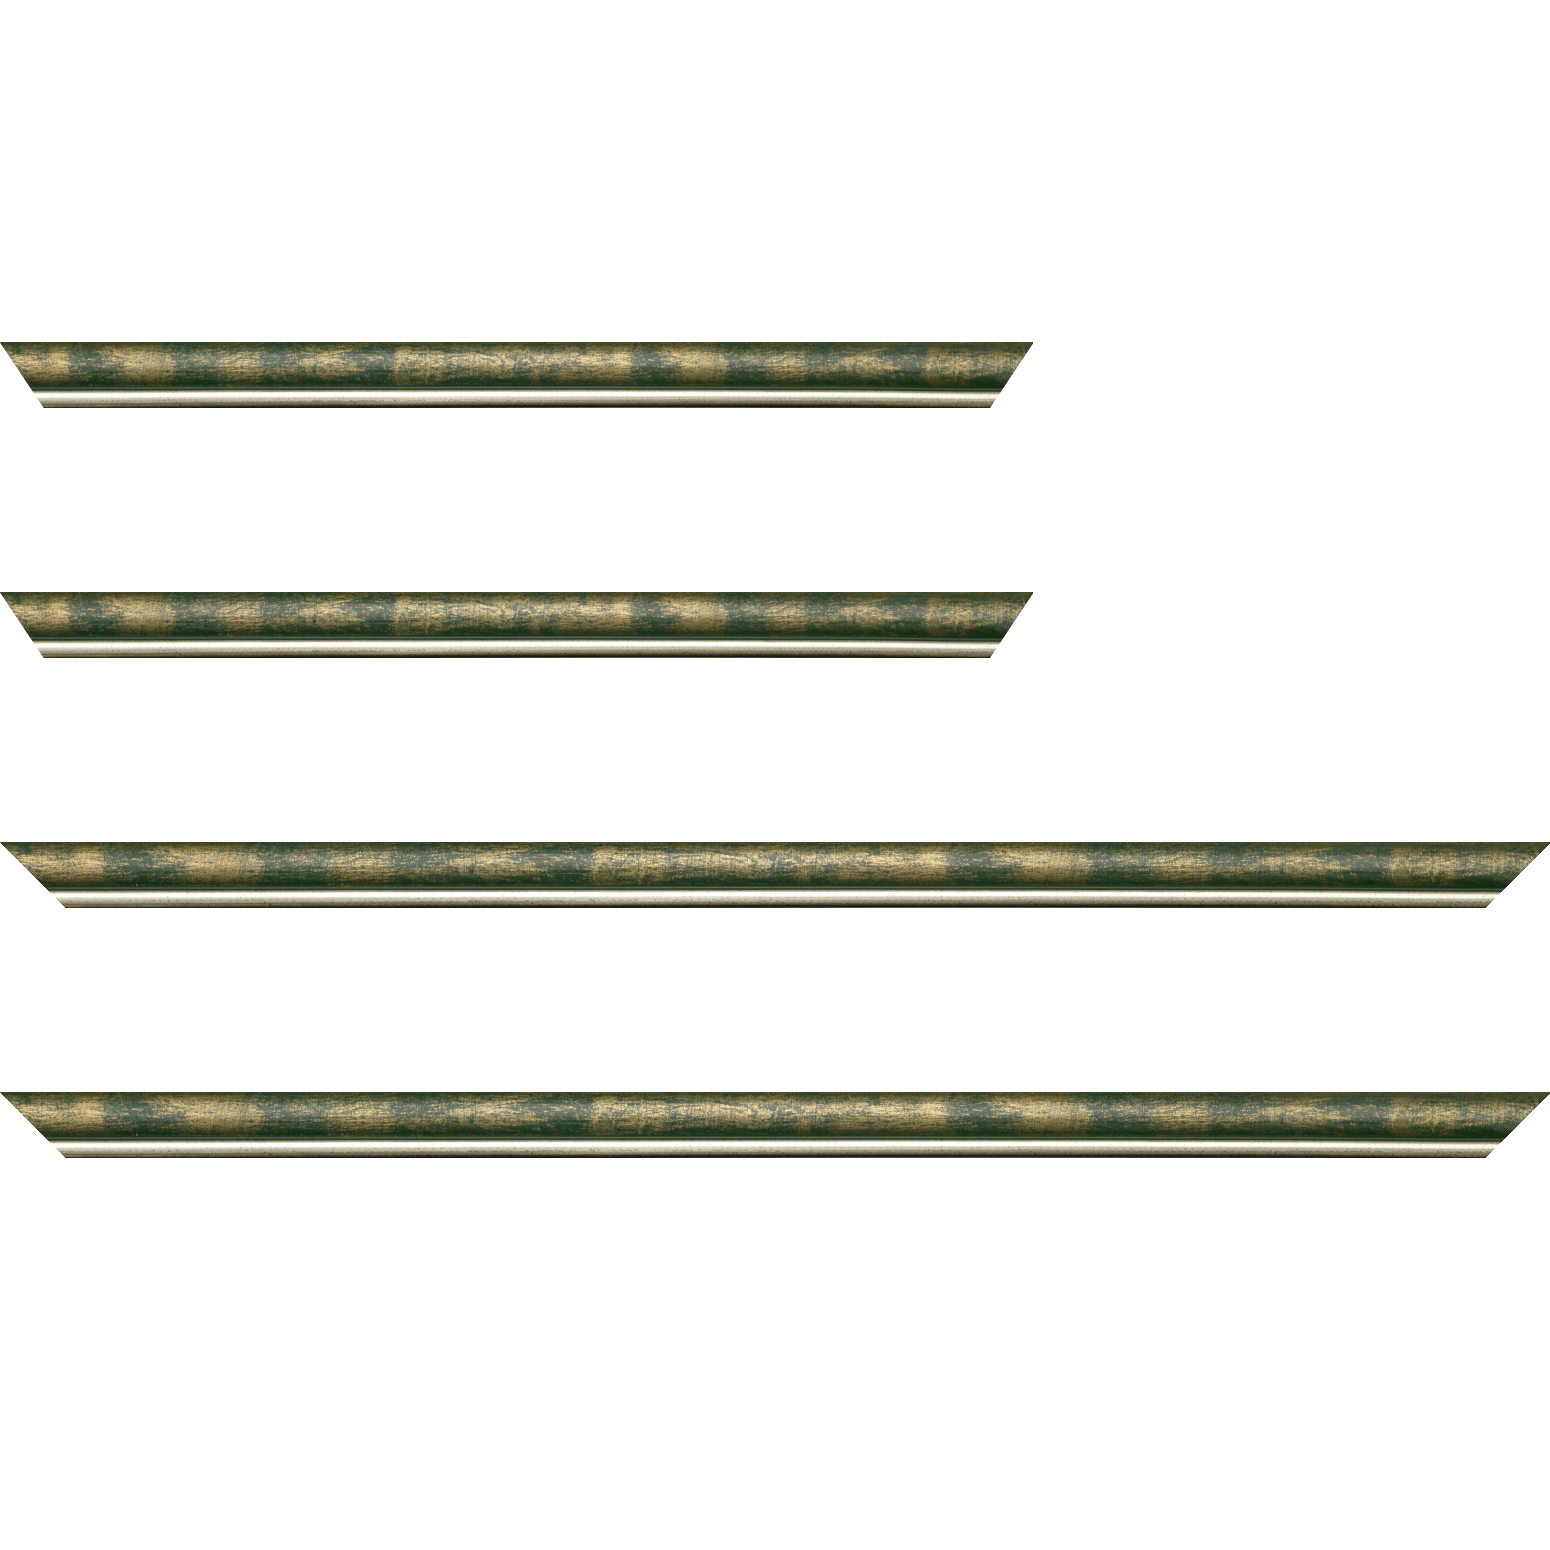 Baguette bois profil arrondi largeur 2.1cm  couleur vert fond or filet argent chaud - 18x24